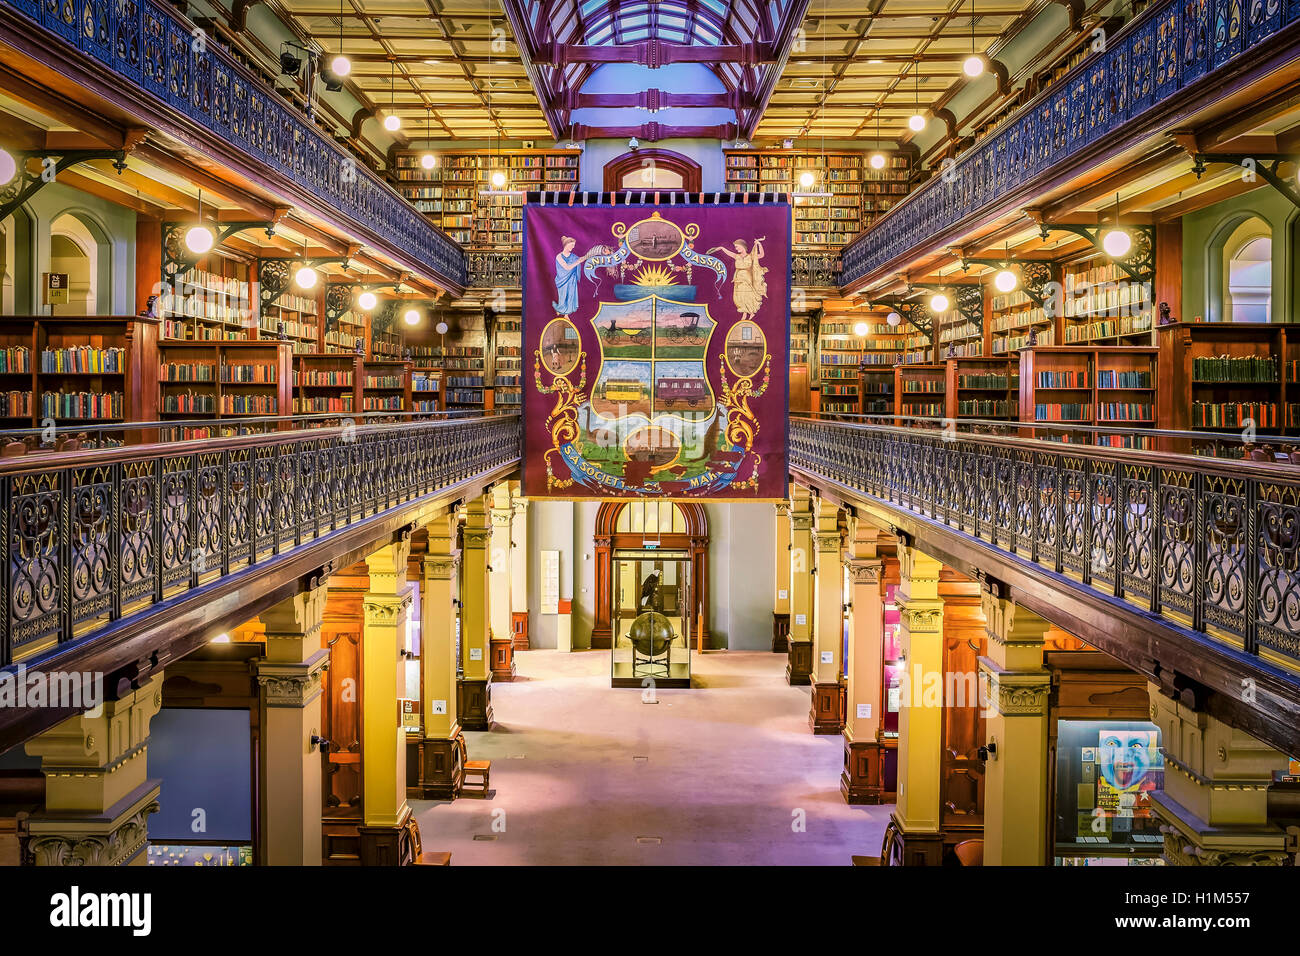 L'intérieur de l'historique Bibliothèque Mortlock, dans la bibliothèque de l'état de l'Australie du Sud, Adélaïde. Banque D'Images